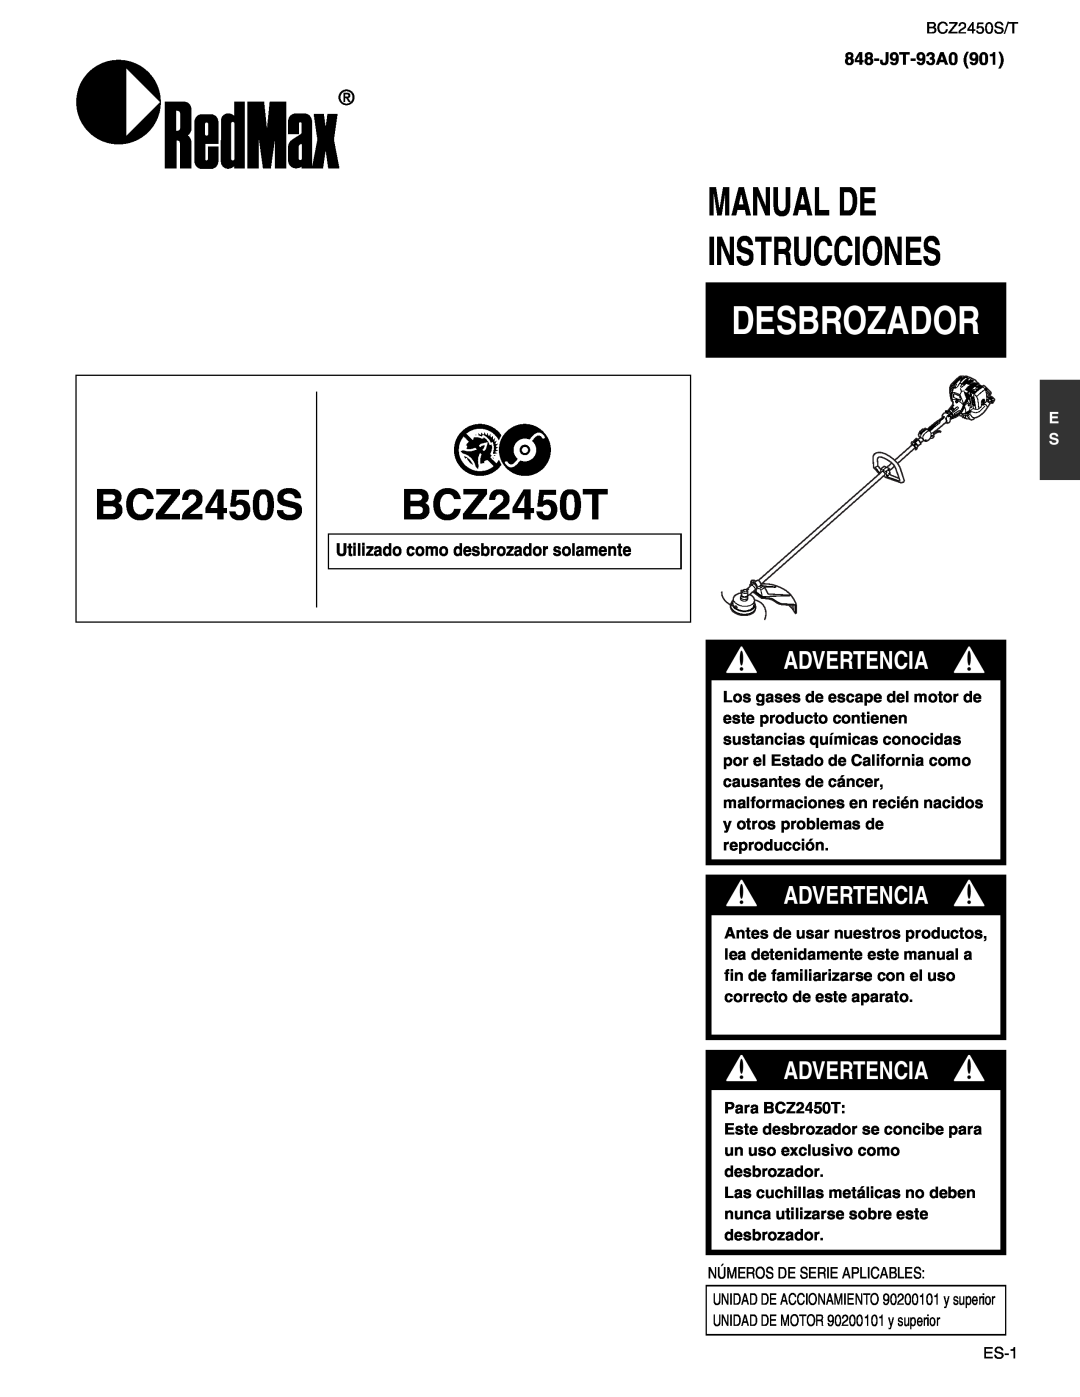 RedMax BCZ2450S manual Manual De Instrucciones, Desbrozador, BCZ2450T, Advertencia, Utilizado como desbrozador solamente 